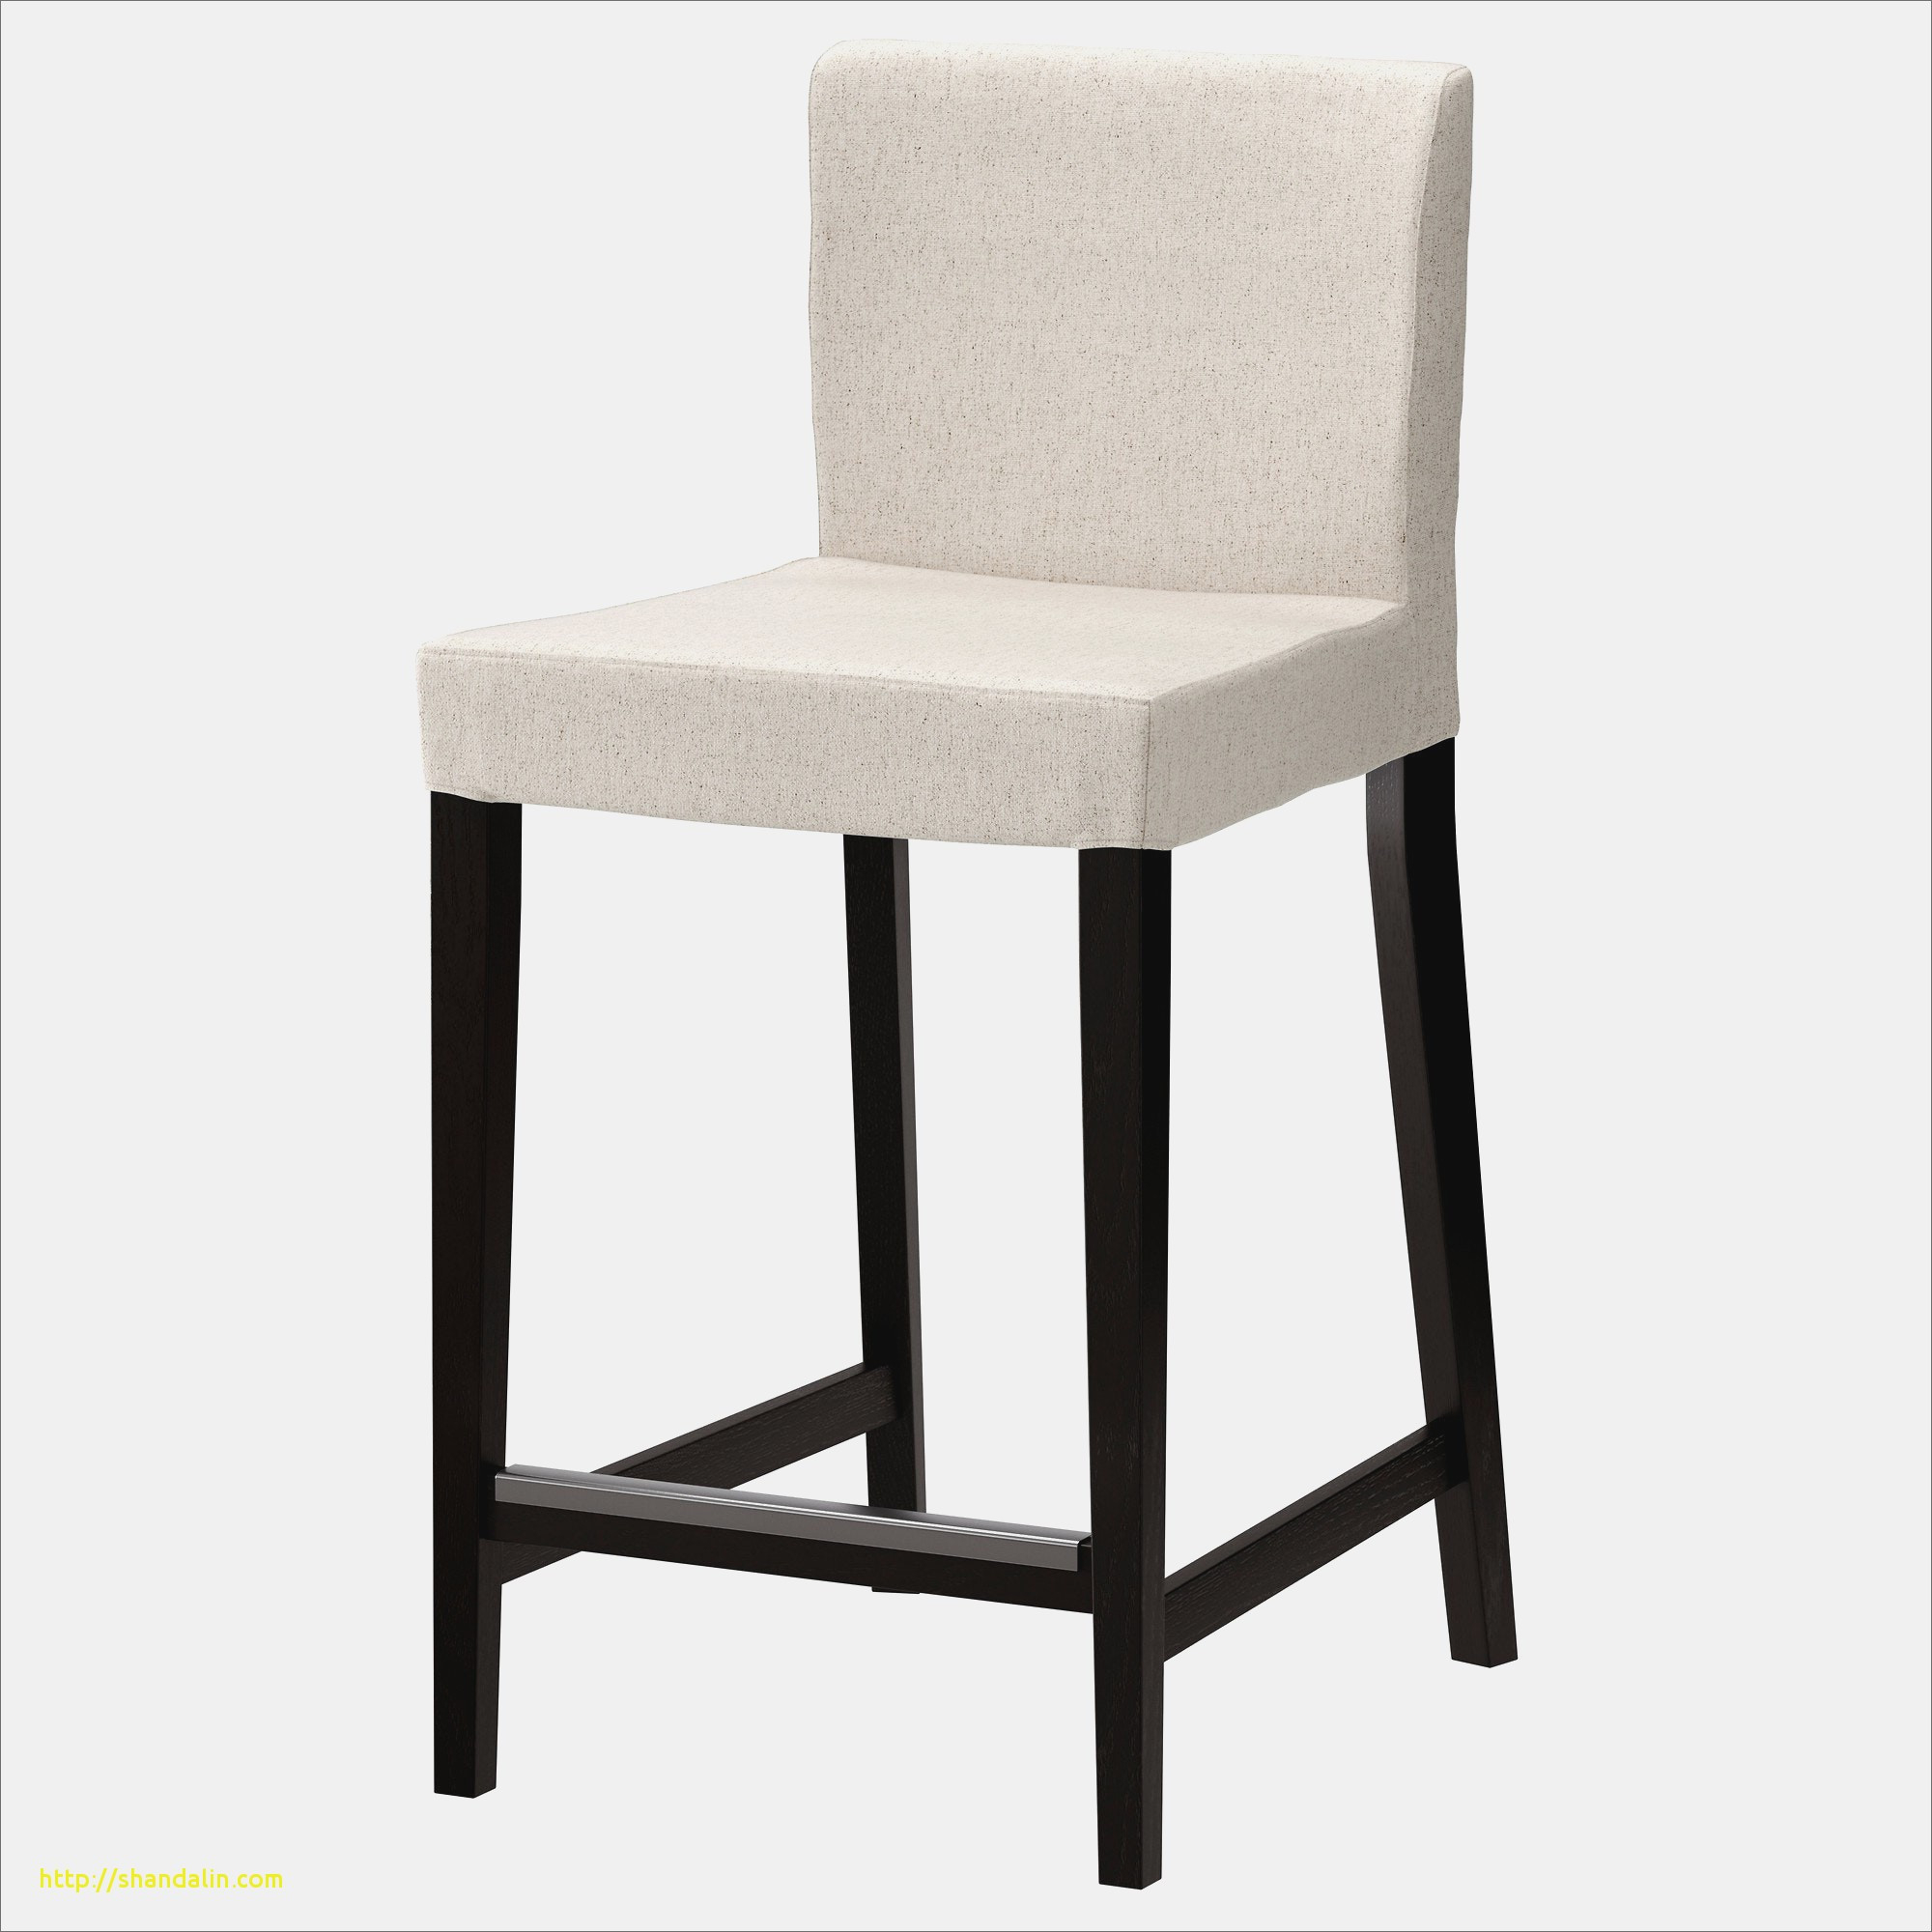 chaise haute de cuisine alinea chaises ides dans chaise haute de cuisine alinea chaises ides of